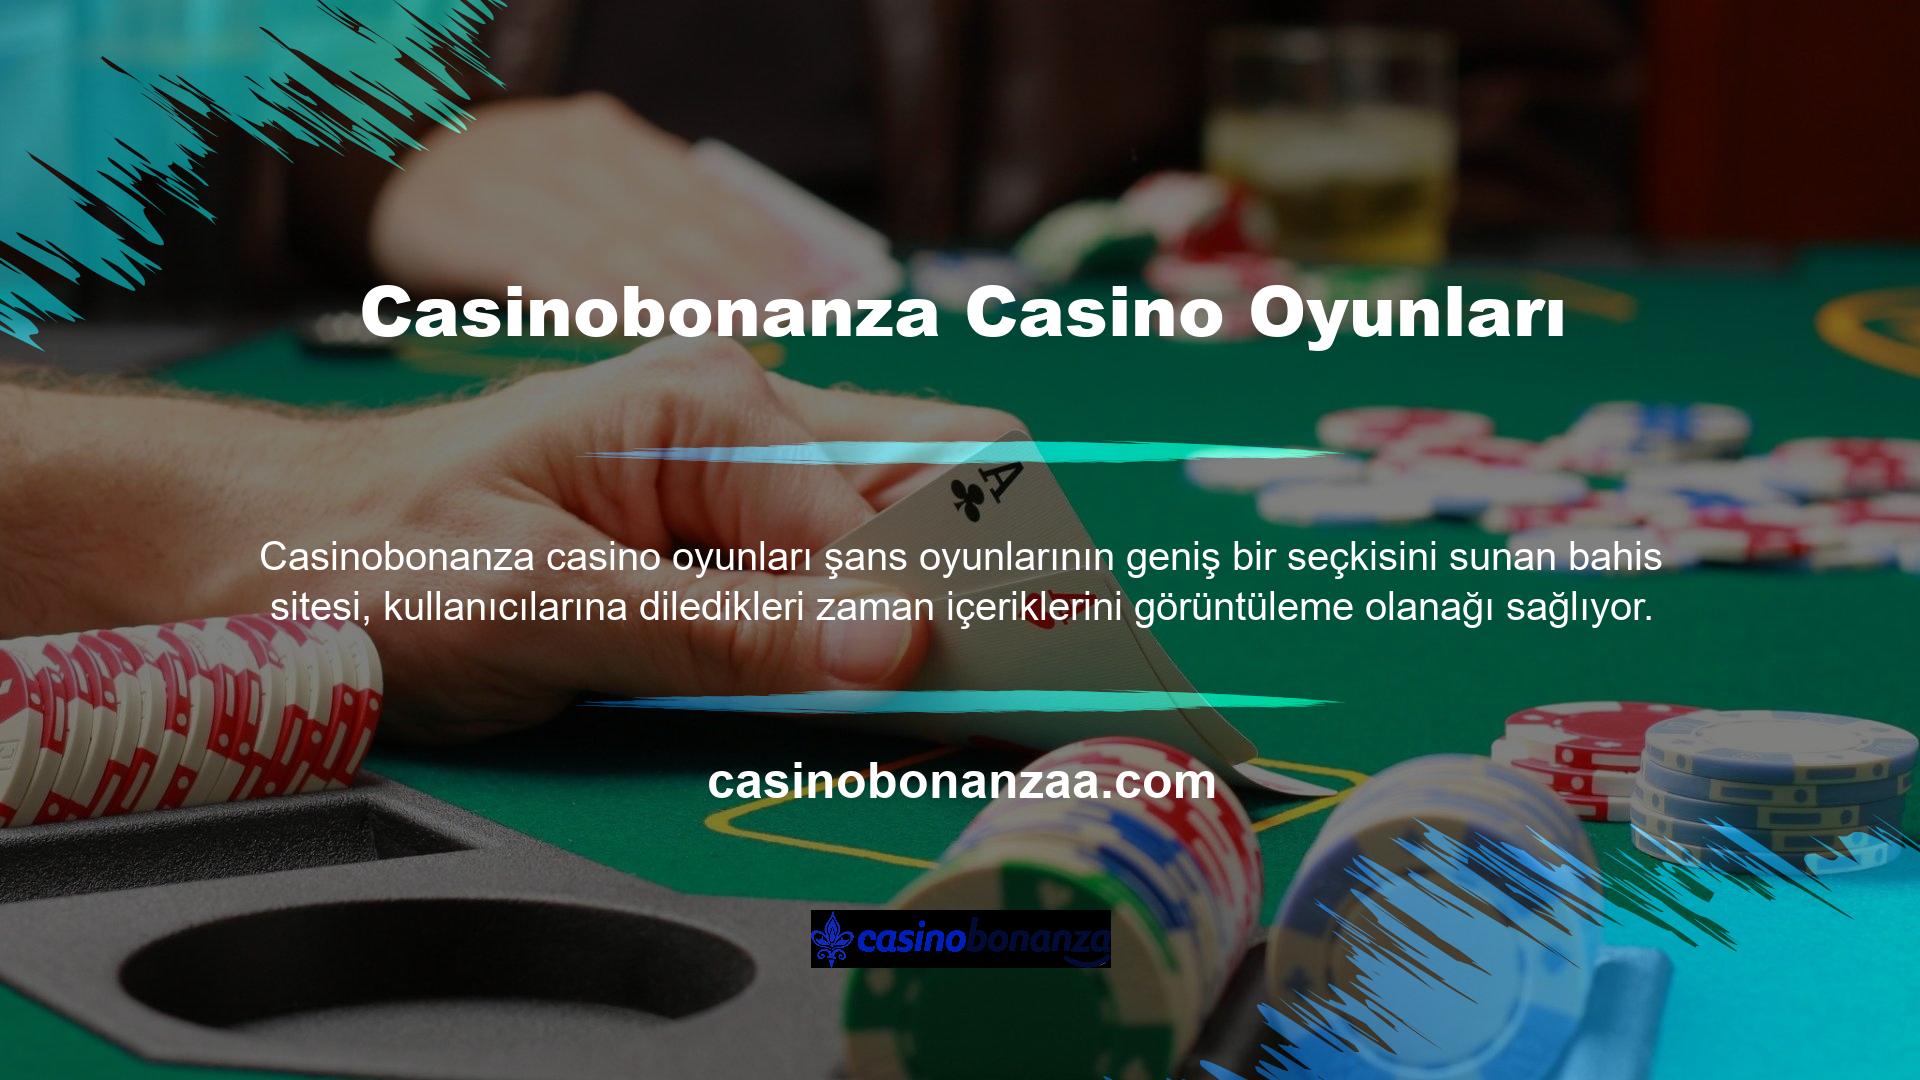 Adil para kazanma yeteneği, kaliteli bahis sitelerinde casino oyunları oynamanın önemli bir avantajıdır